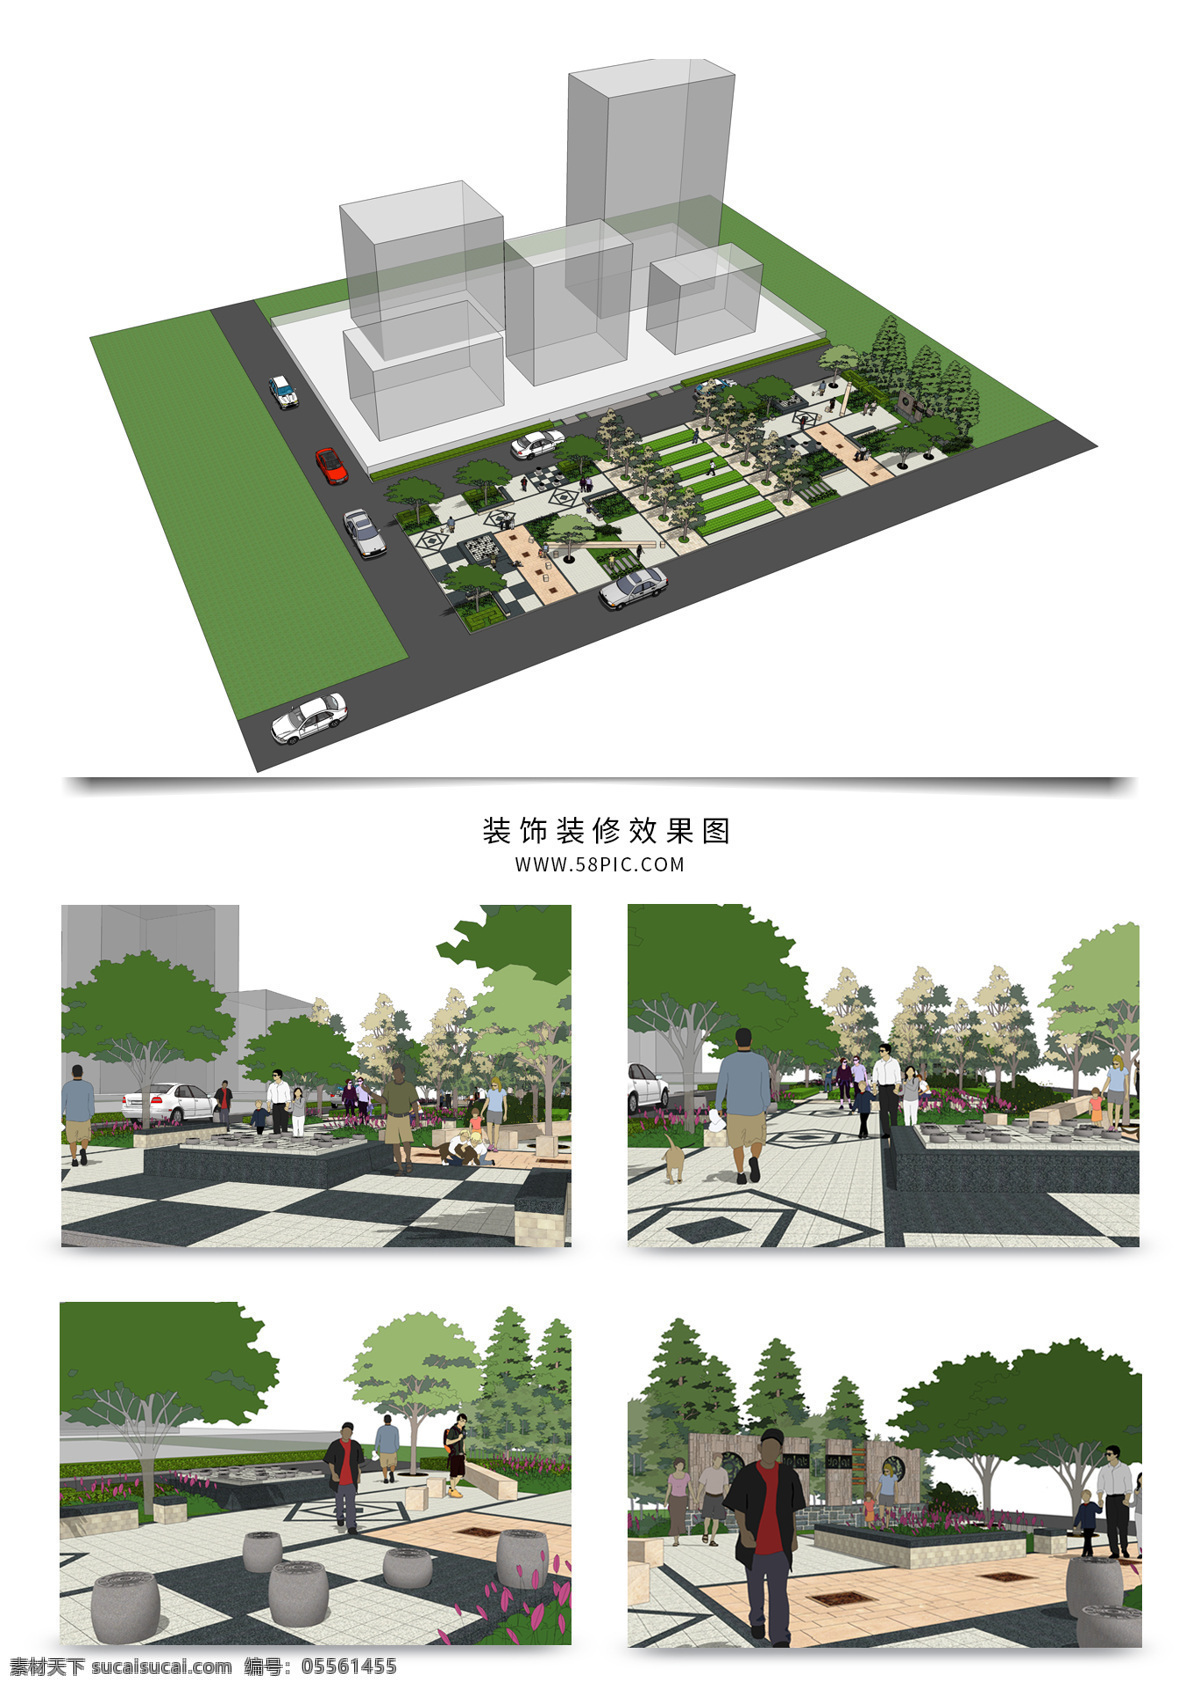 建筑 区 景观 规划 方案 su 模型 园林 sketchup 草图 大师 景观规划 建筑装饰 设计素材 景观规划设计